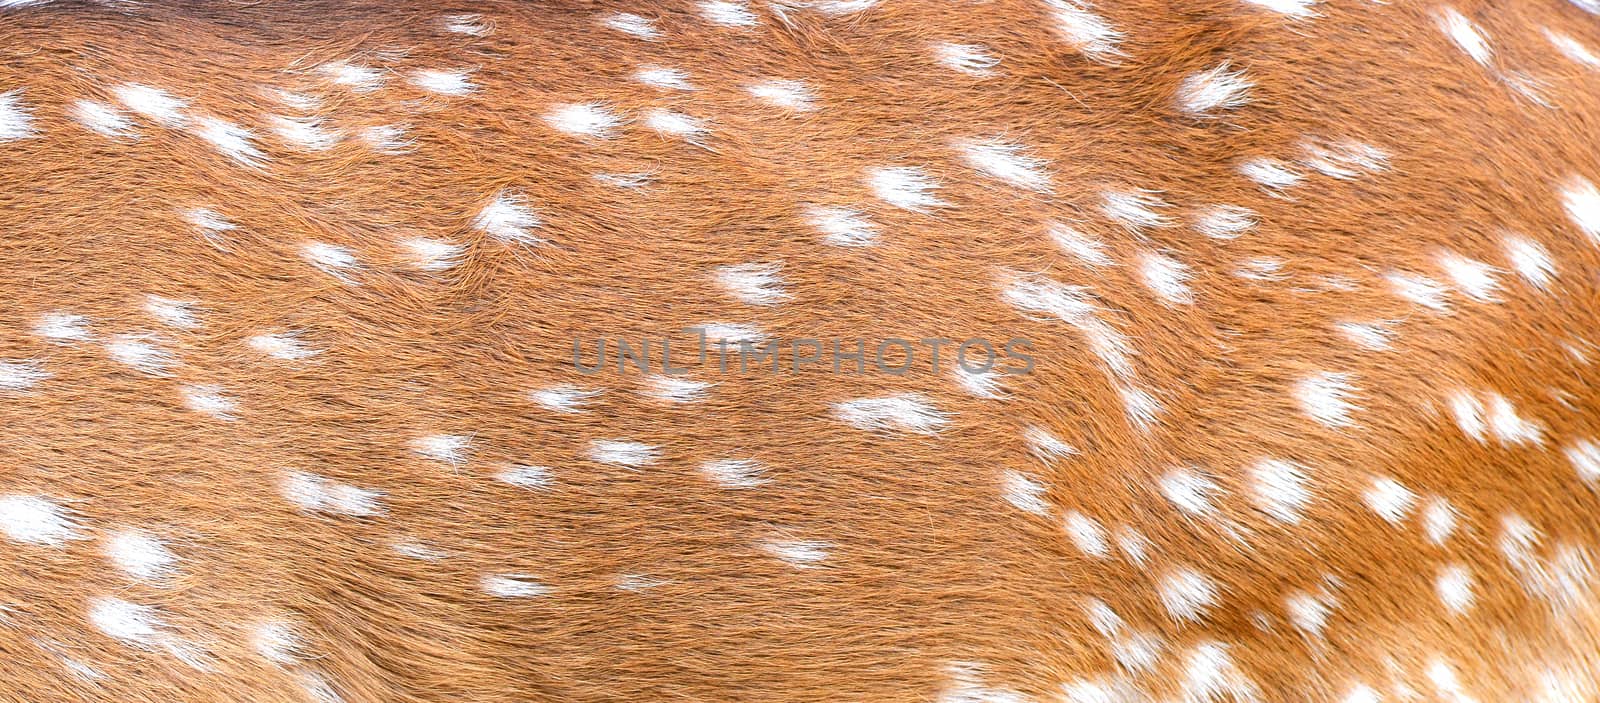 axis deer skin by anankkml